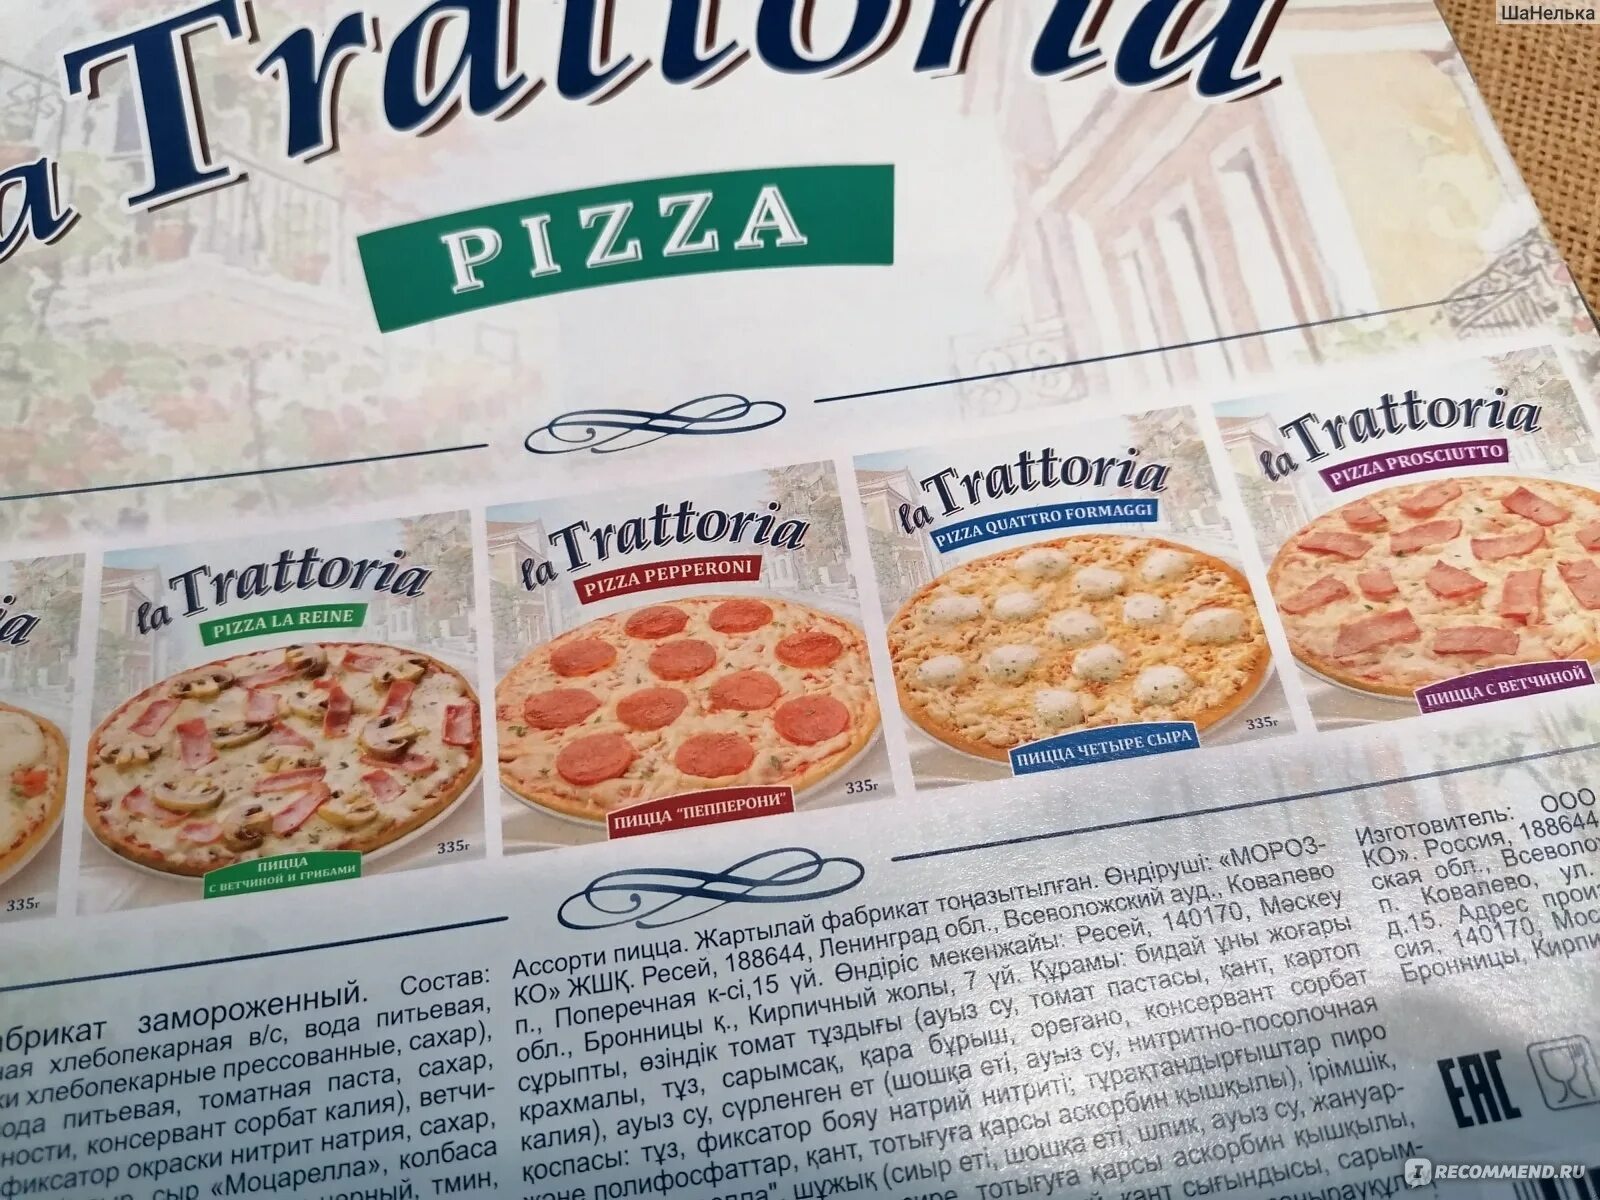 Пицца la Trattoria. 100 Г пиццы. Моцарелла для пиццы Trattoria. Пицца Траттория ассорти.